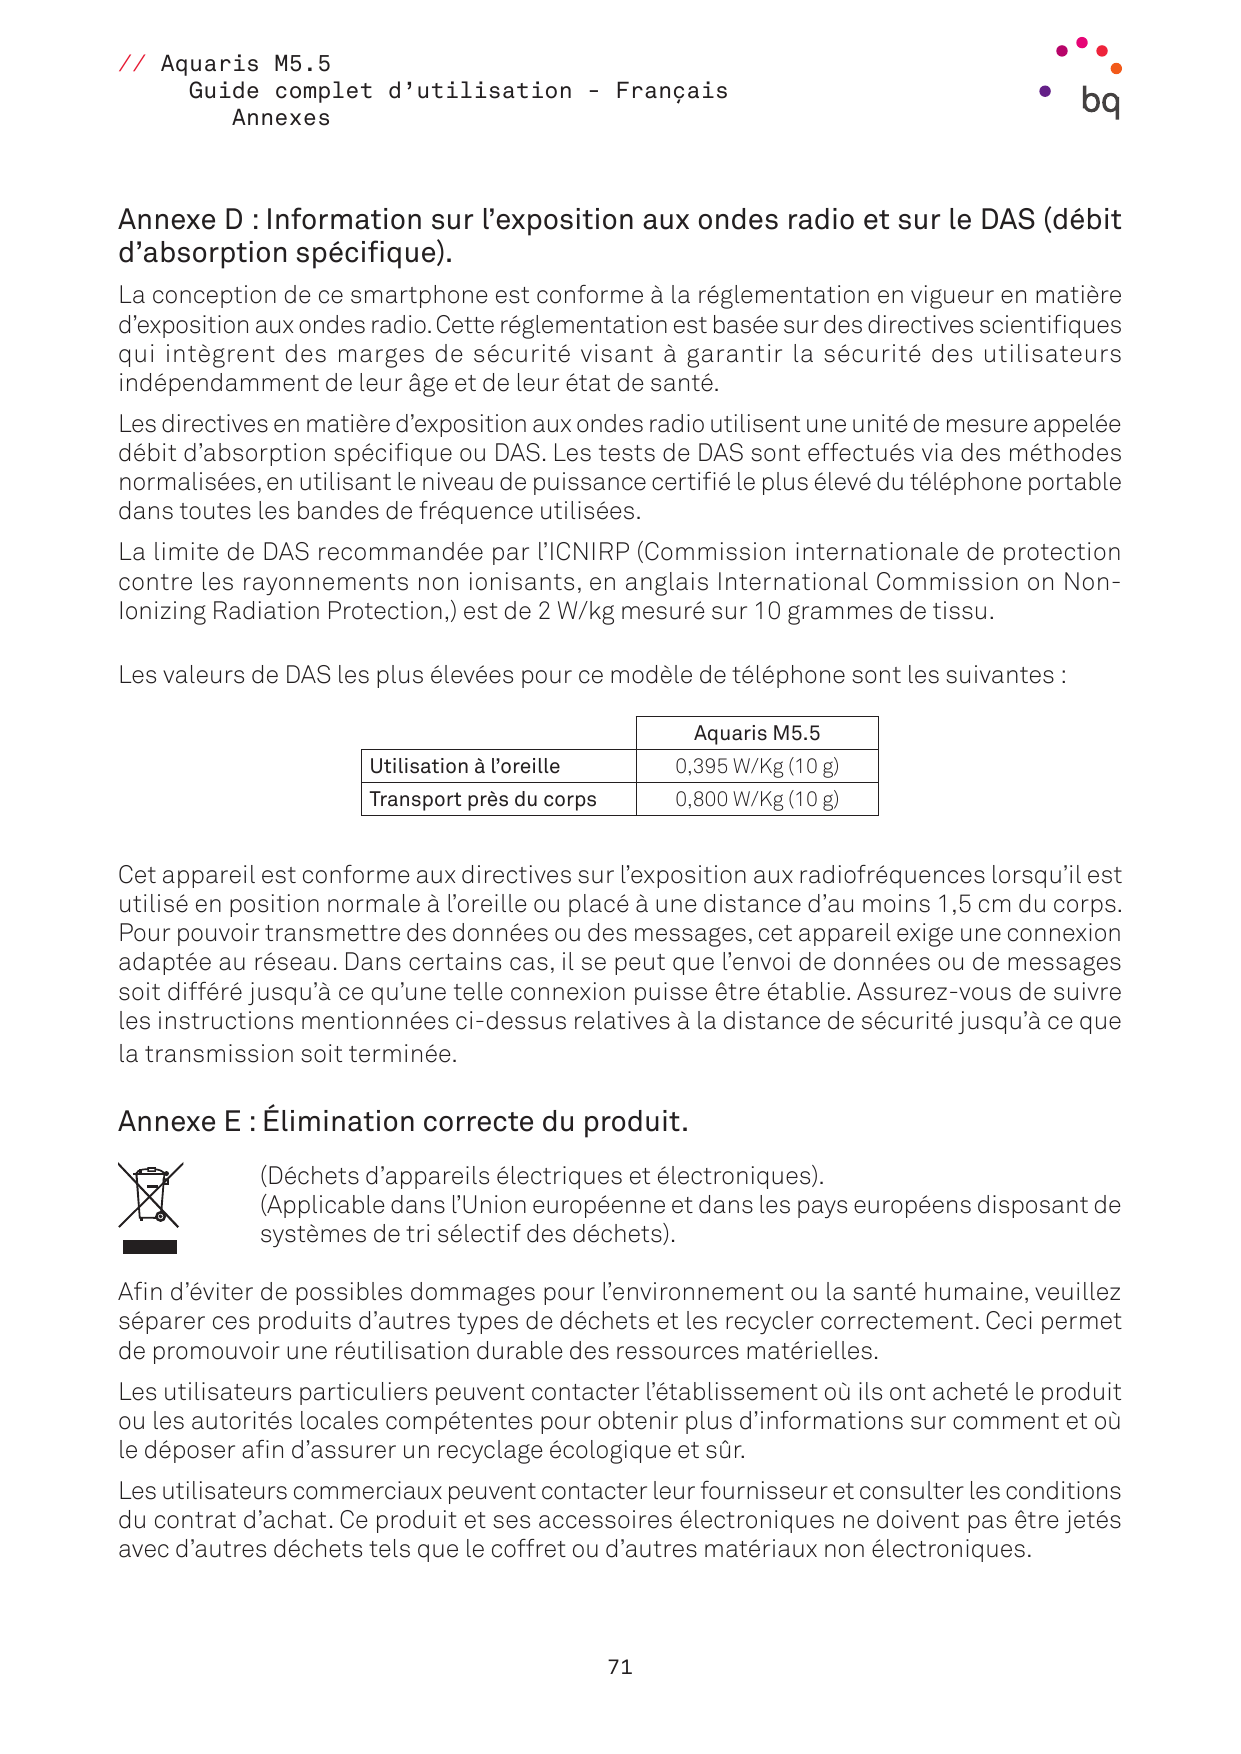 // Aquaris M5.5Guide complet d’utilisation - FrançaisAnnexesAnnexe D : Information sur l’exposition aux ondes radio et sur le DA